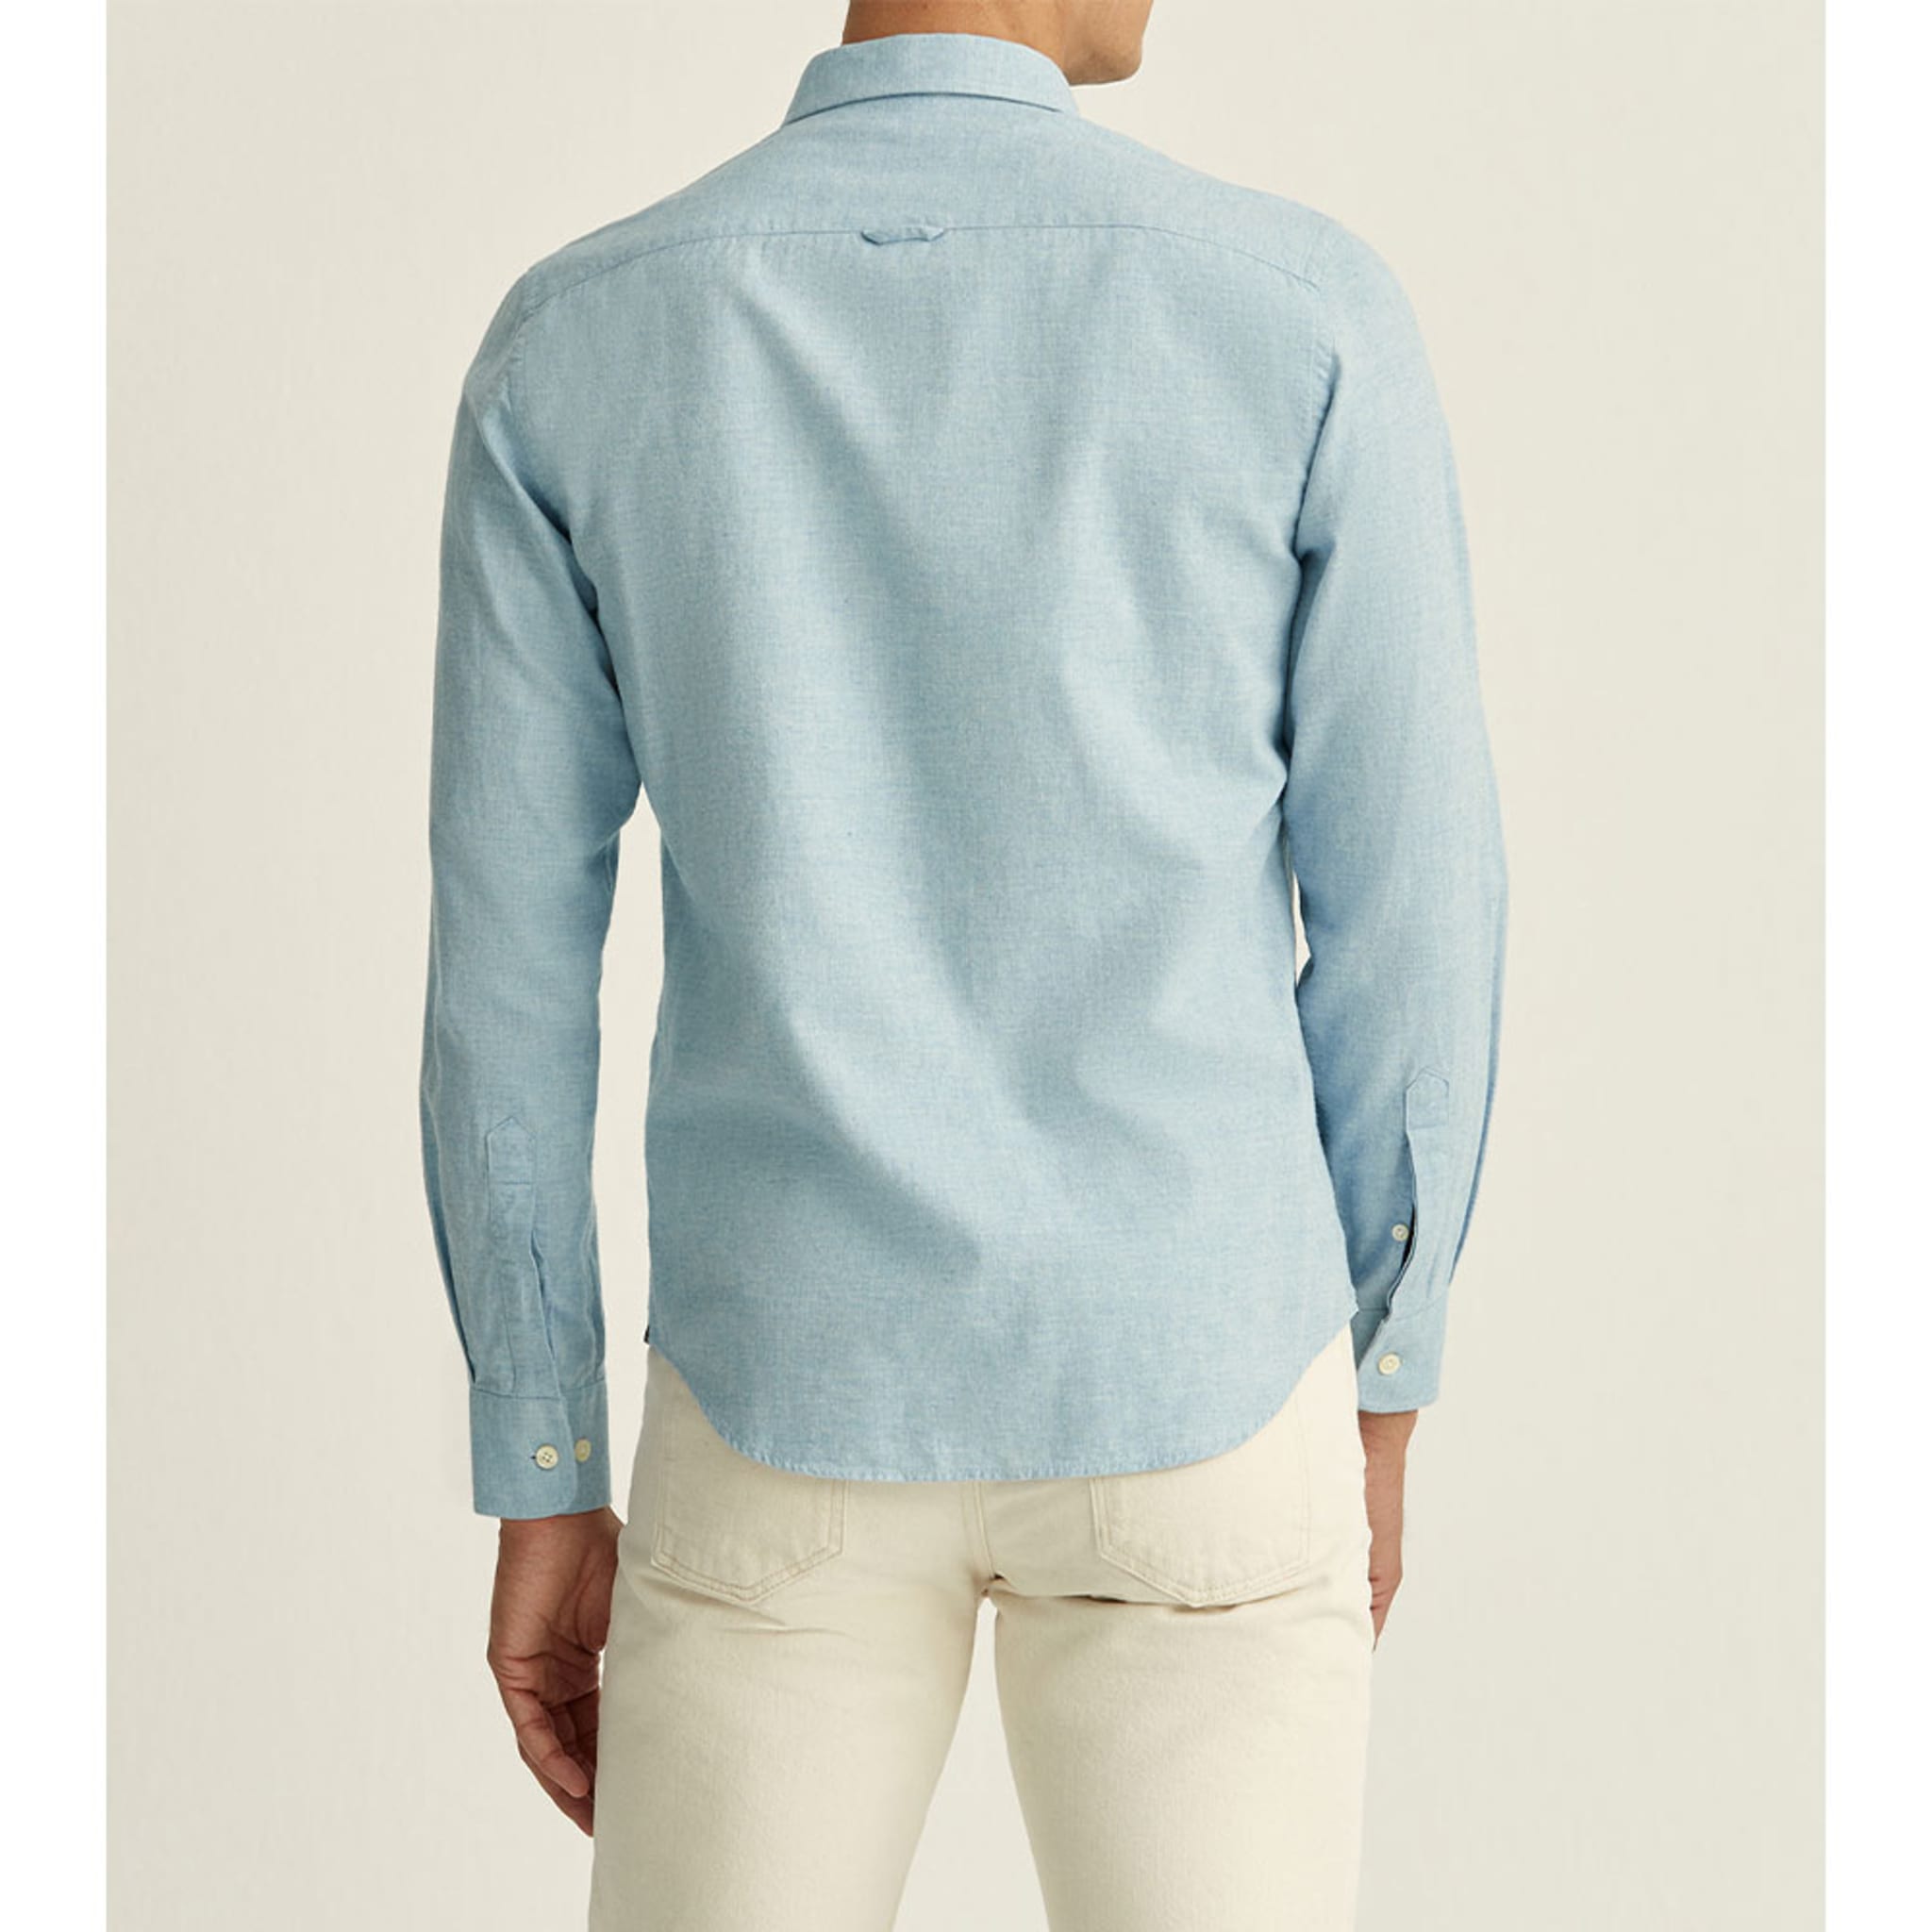 Watts Flannel Shirt, Light Blue